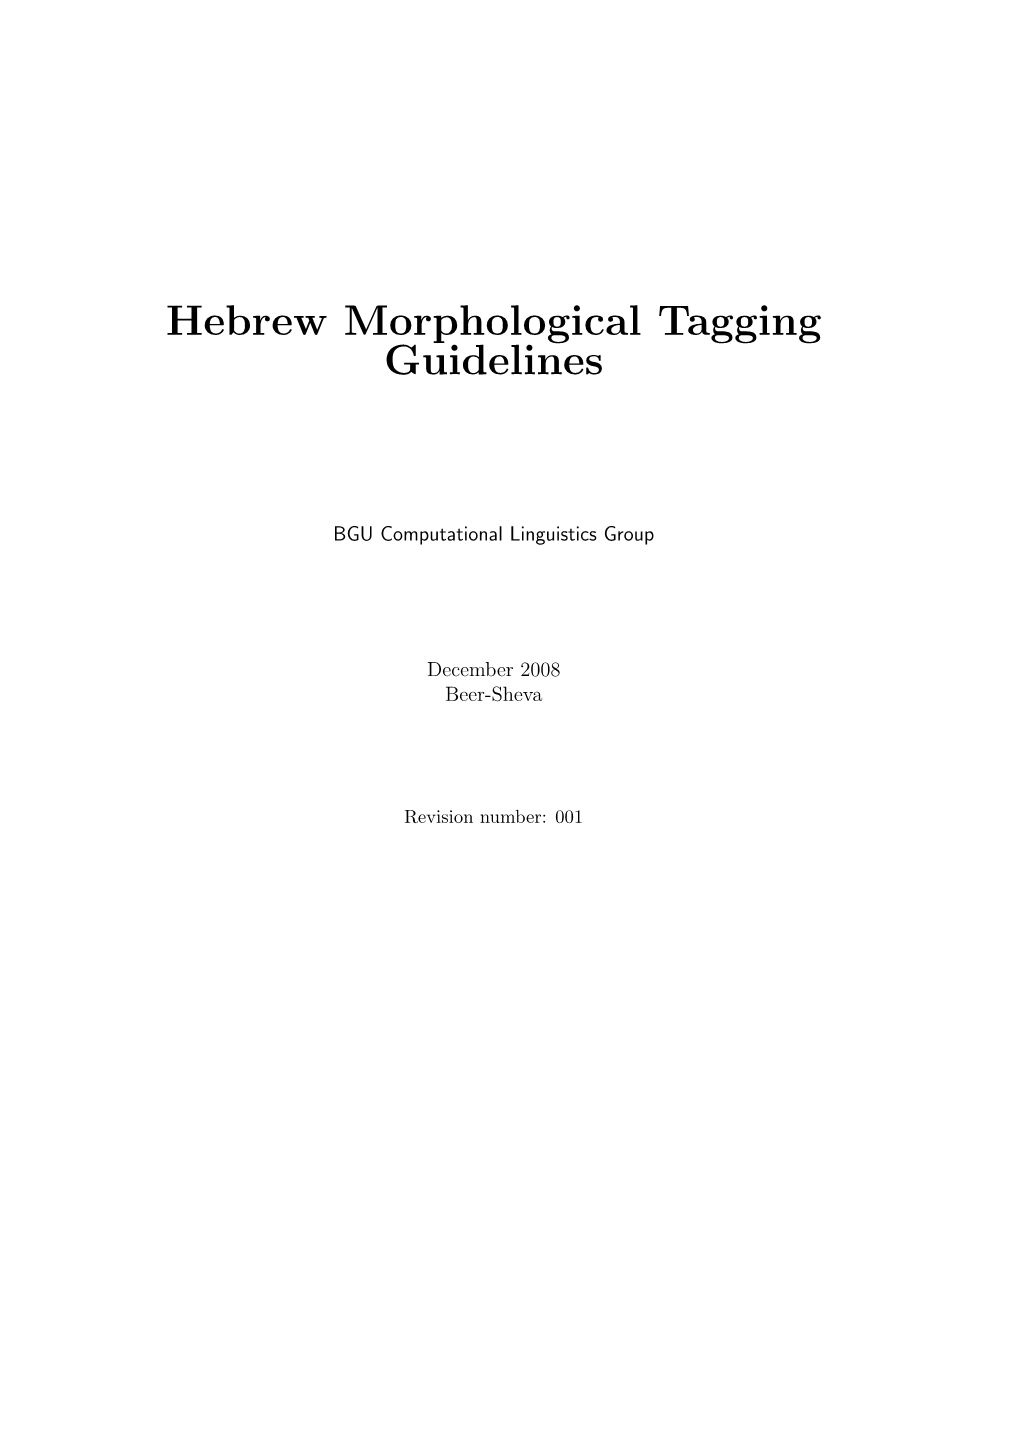 Hebrew Morphological Tagging Guidelines